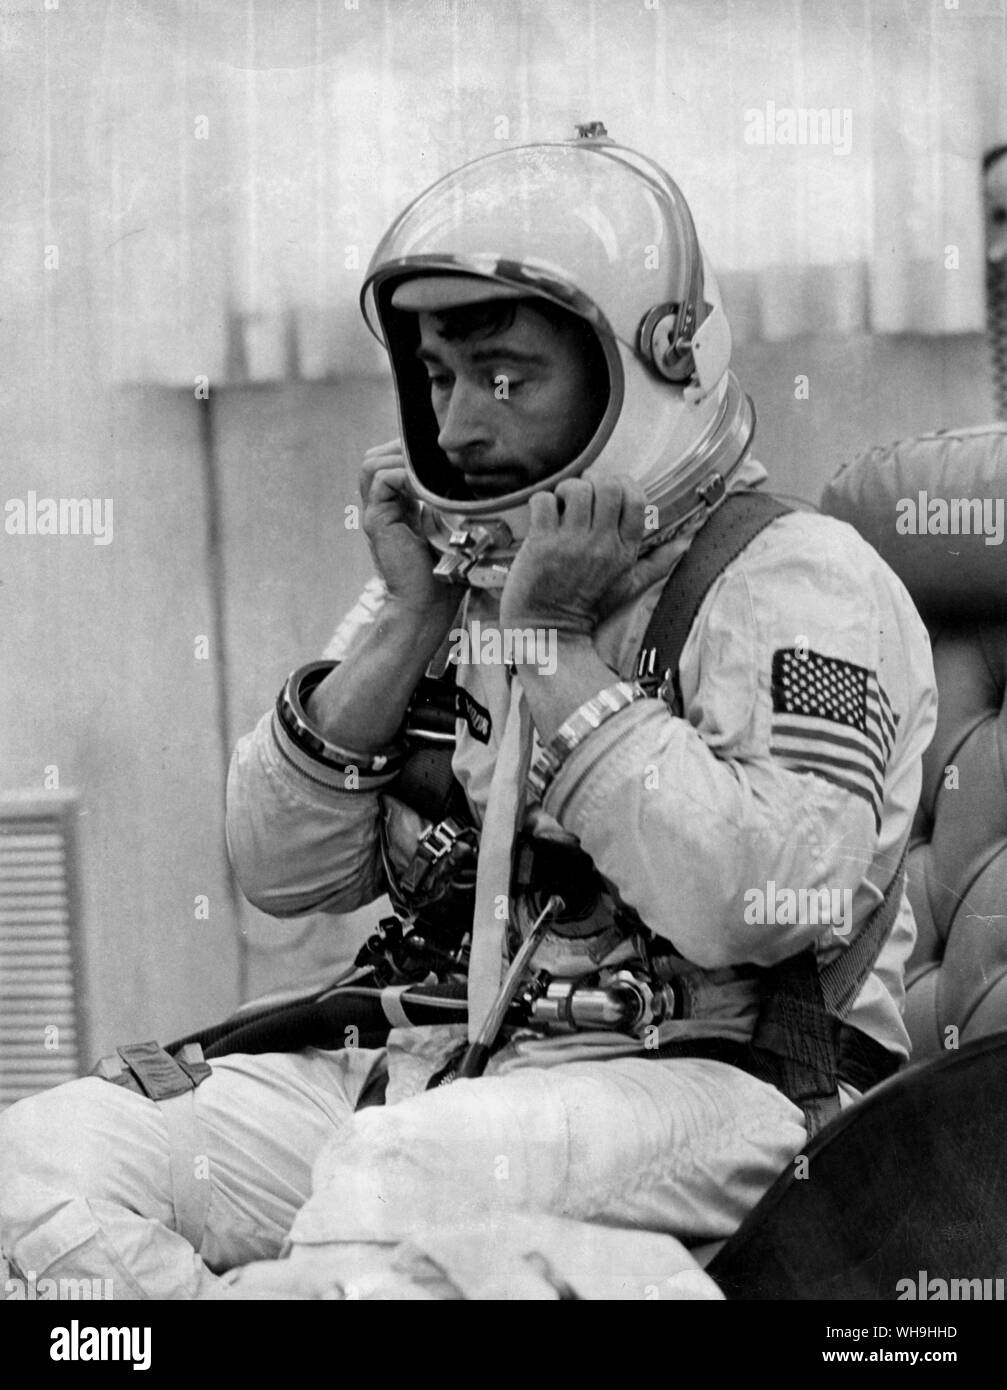 Gemini-10 pilote, John W. Young (1930-), astronaute américain. Il ajuste son casque de scaphandre avant sa mission de trois jours avec pilote, Michael Collins. Les astronautes ont explosé sur orbite le 18 juillet 1966, 100 minutes après leur véhicule cible Agena a été désorbité. Banque D'Images